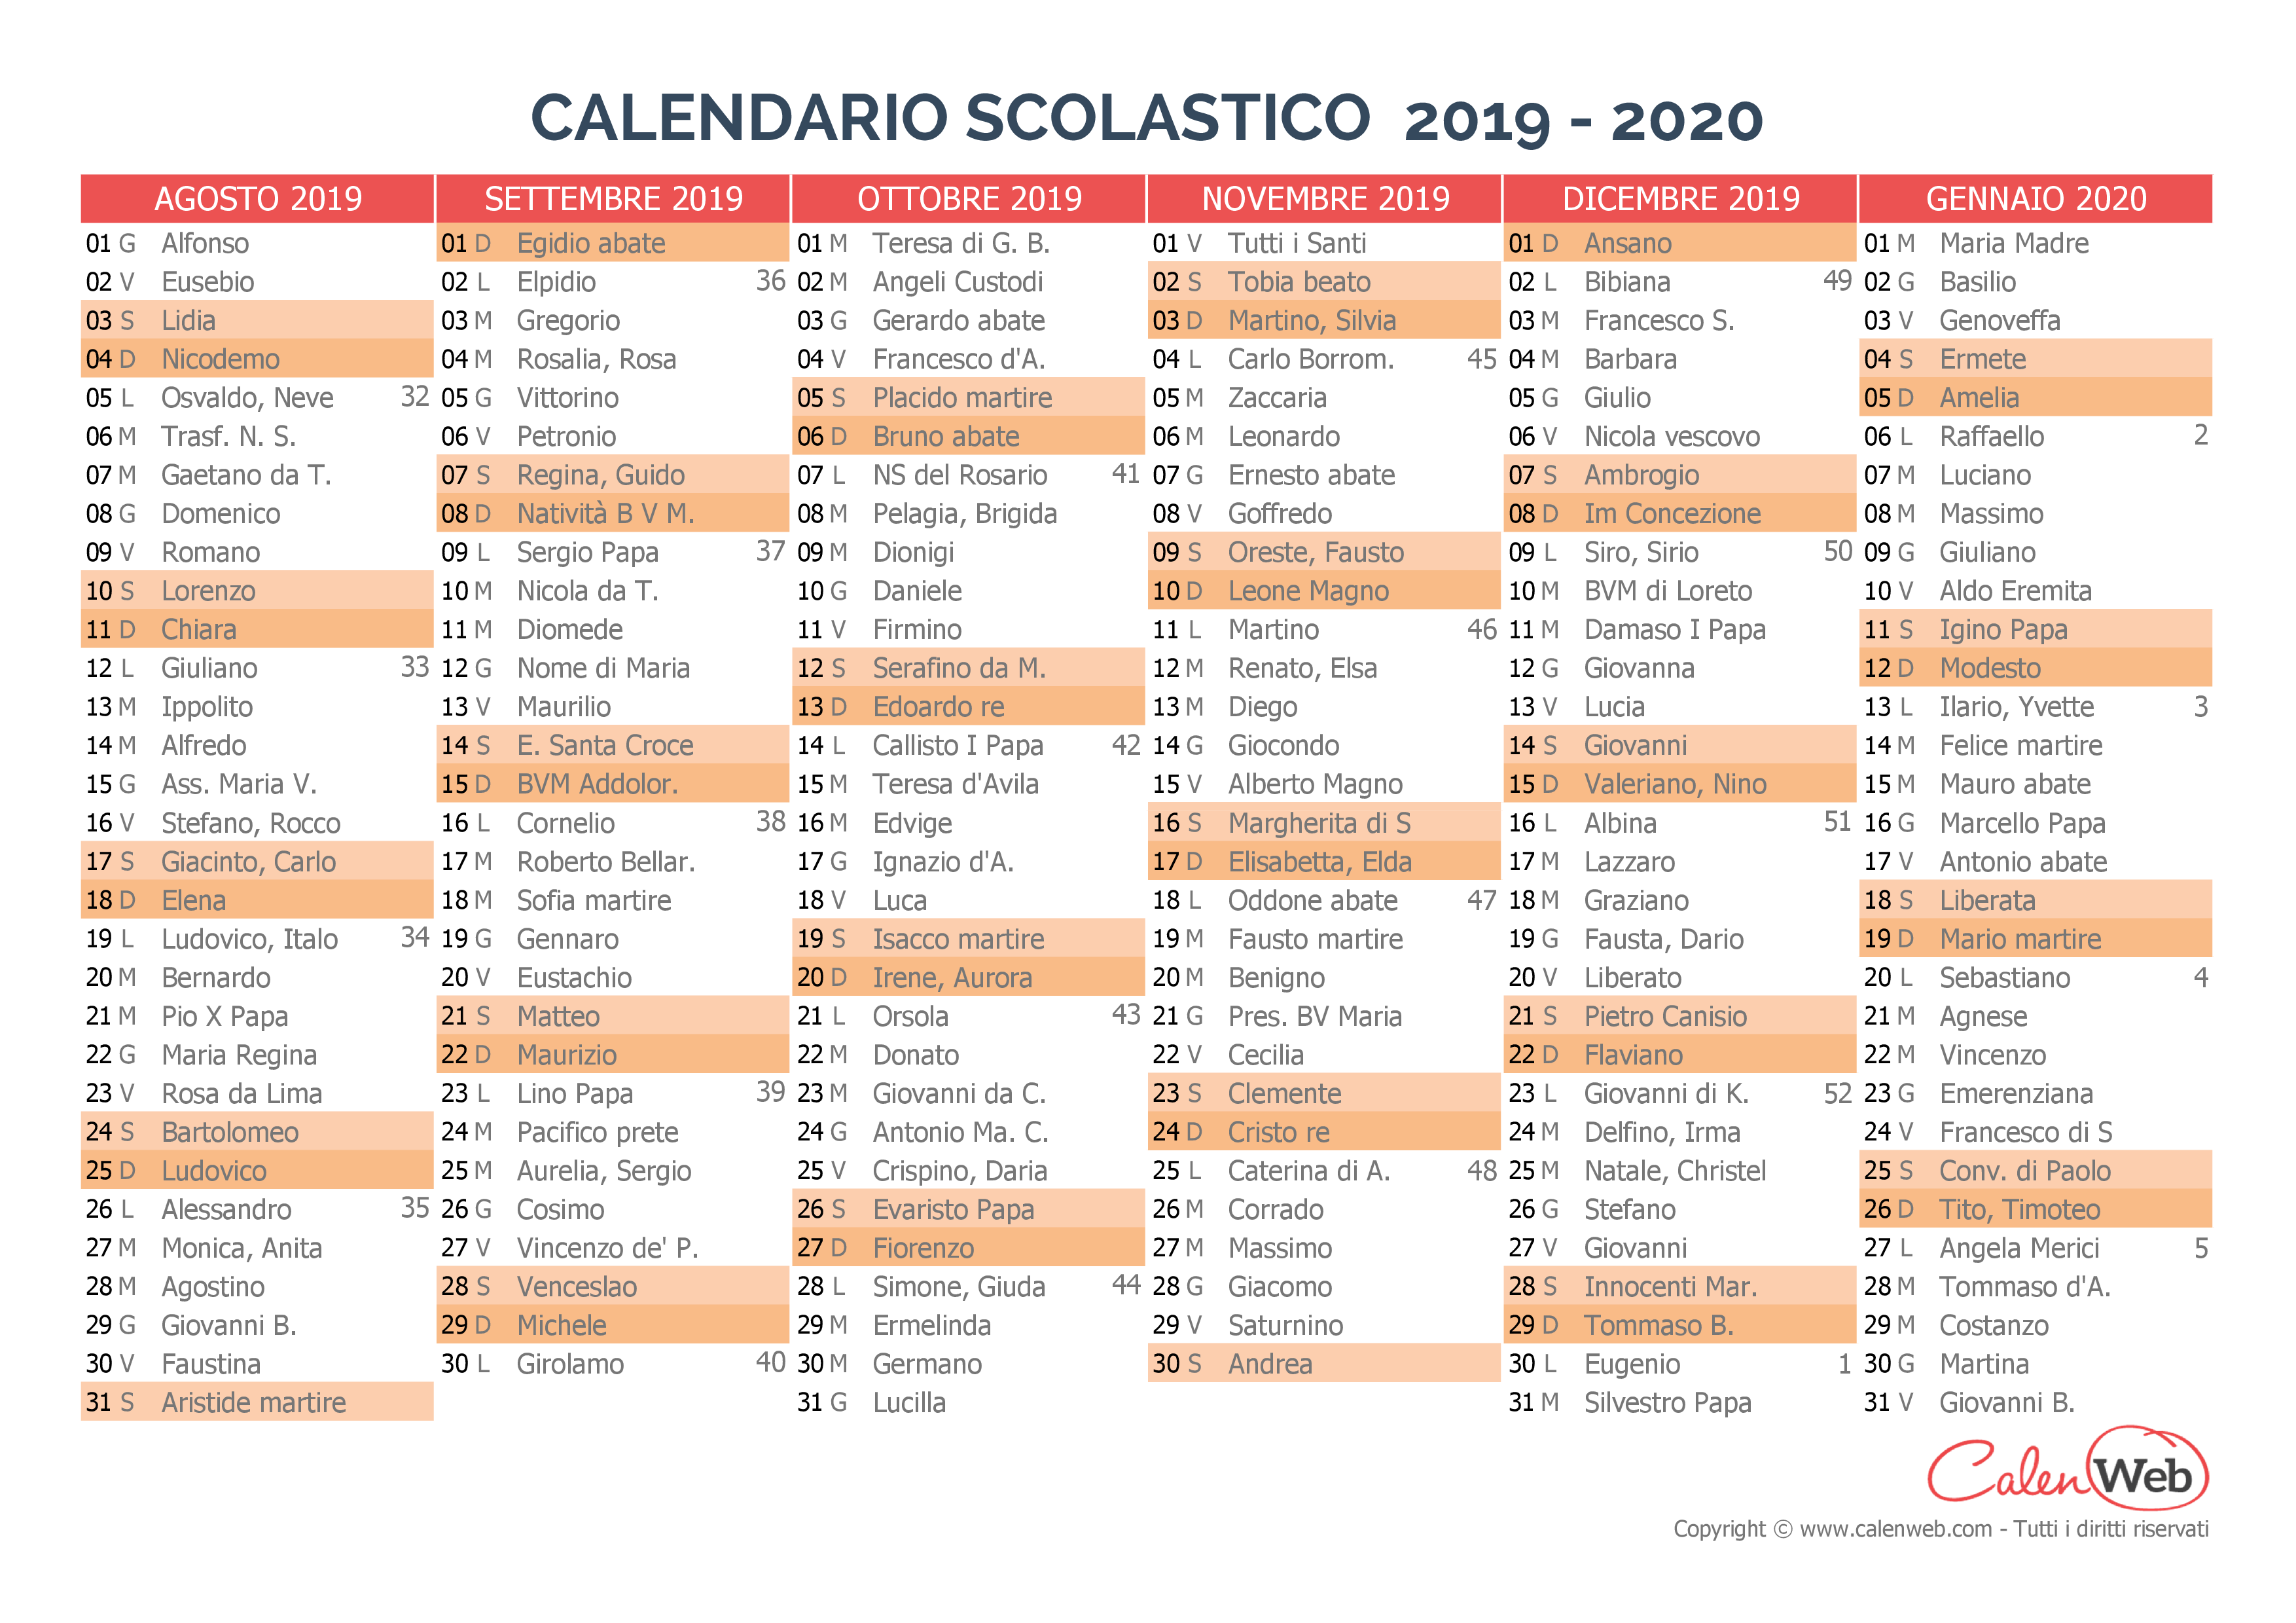 Calendario Scolastico Semestrale 2019 2020 Con I Santi Del Giorno